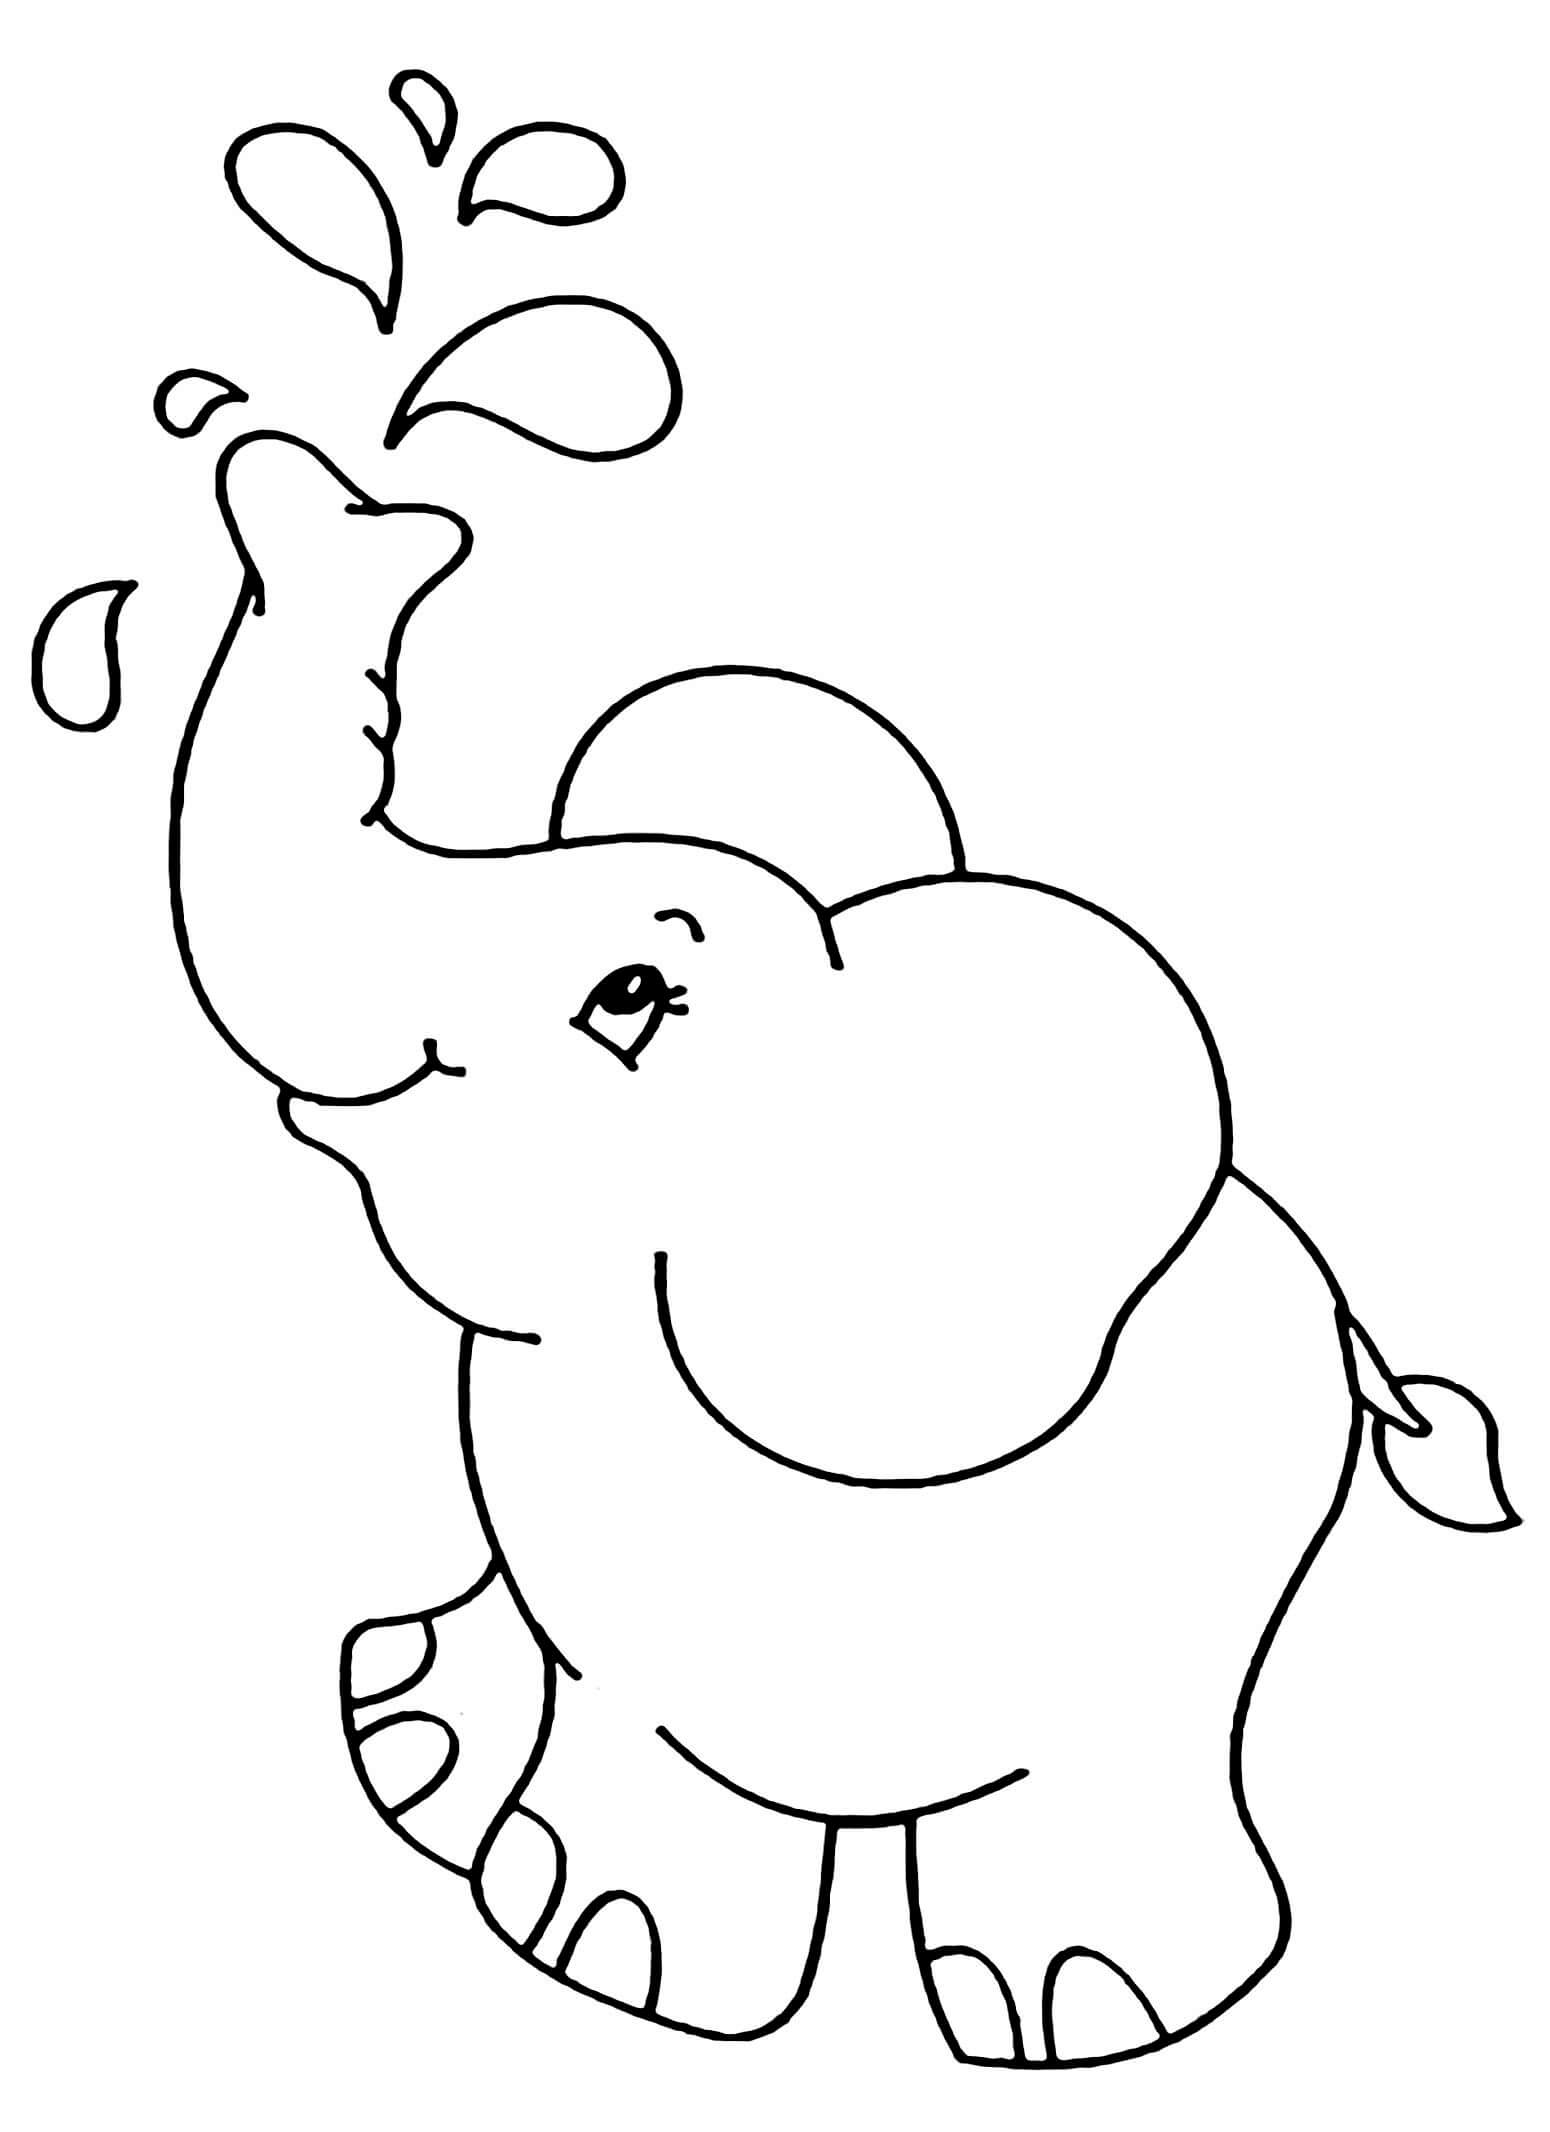 Dibujos de Elefante Sencillo para colorear